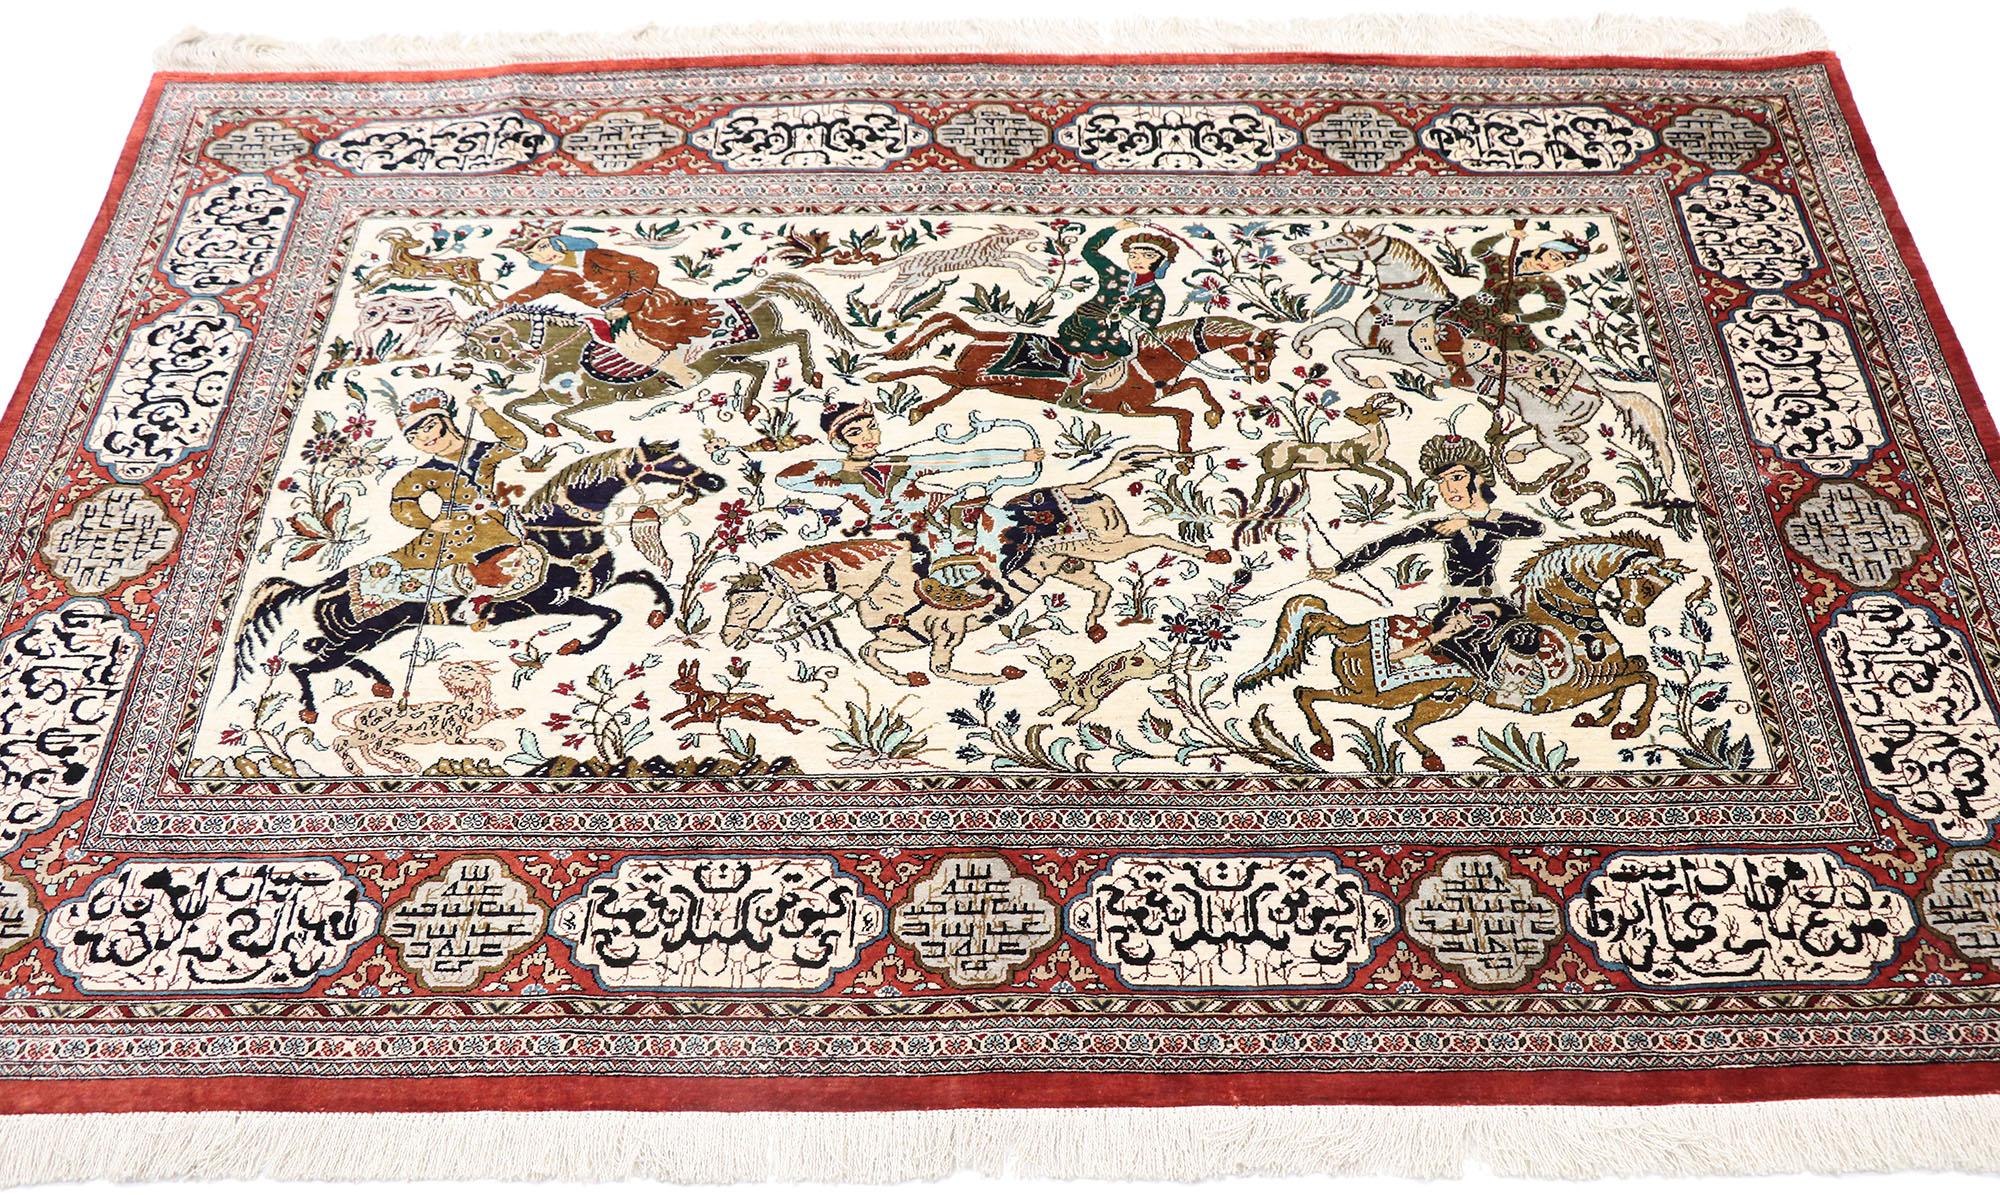 medieval style rug